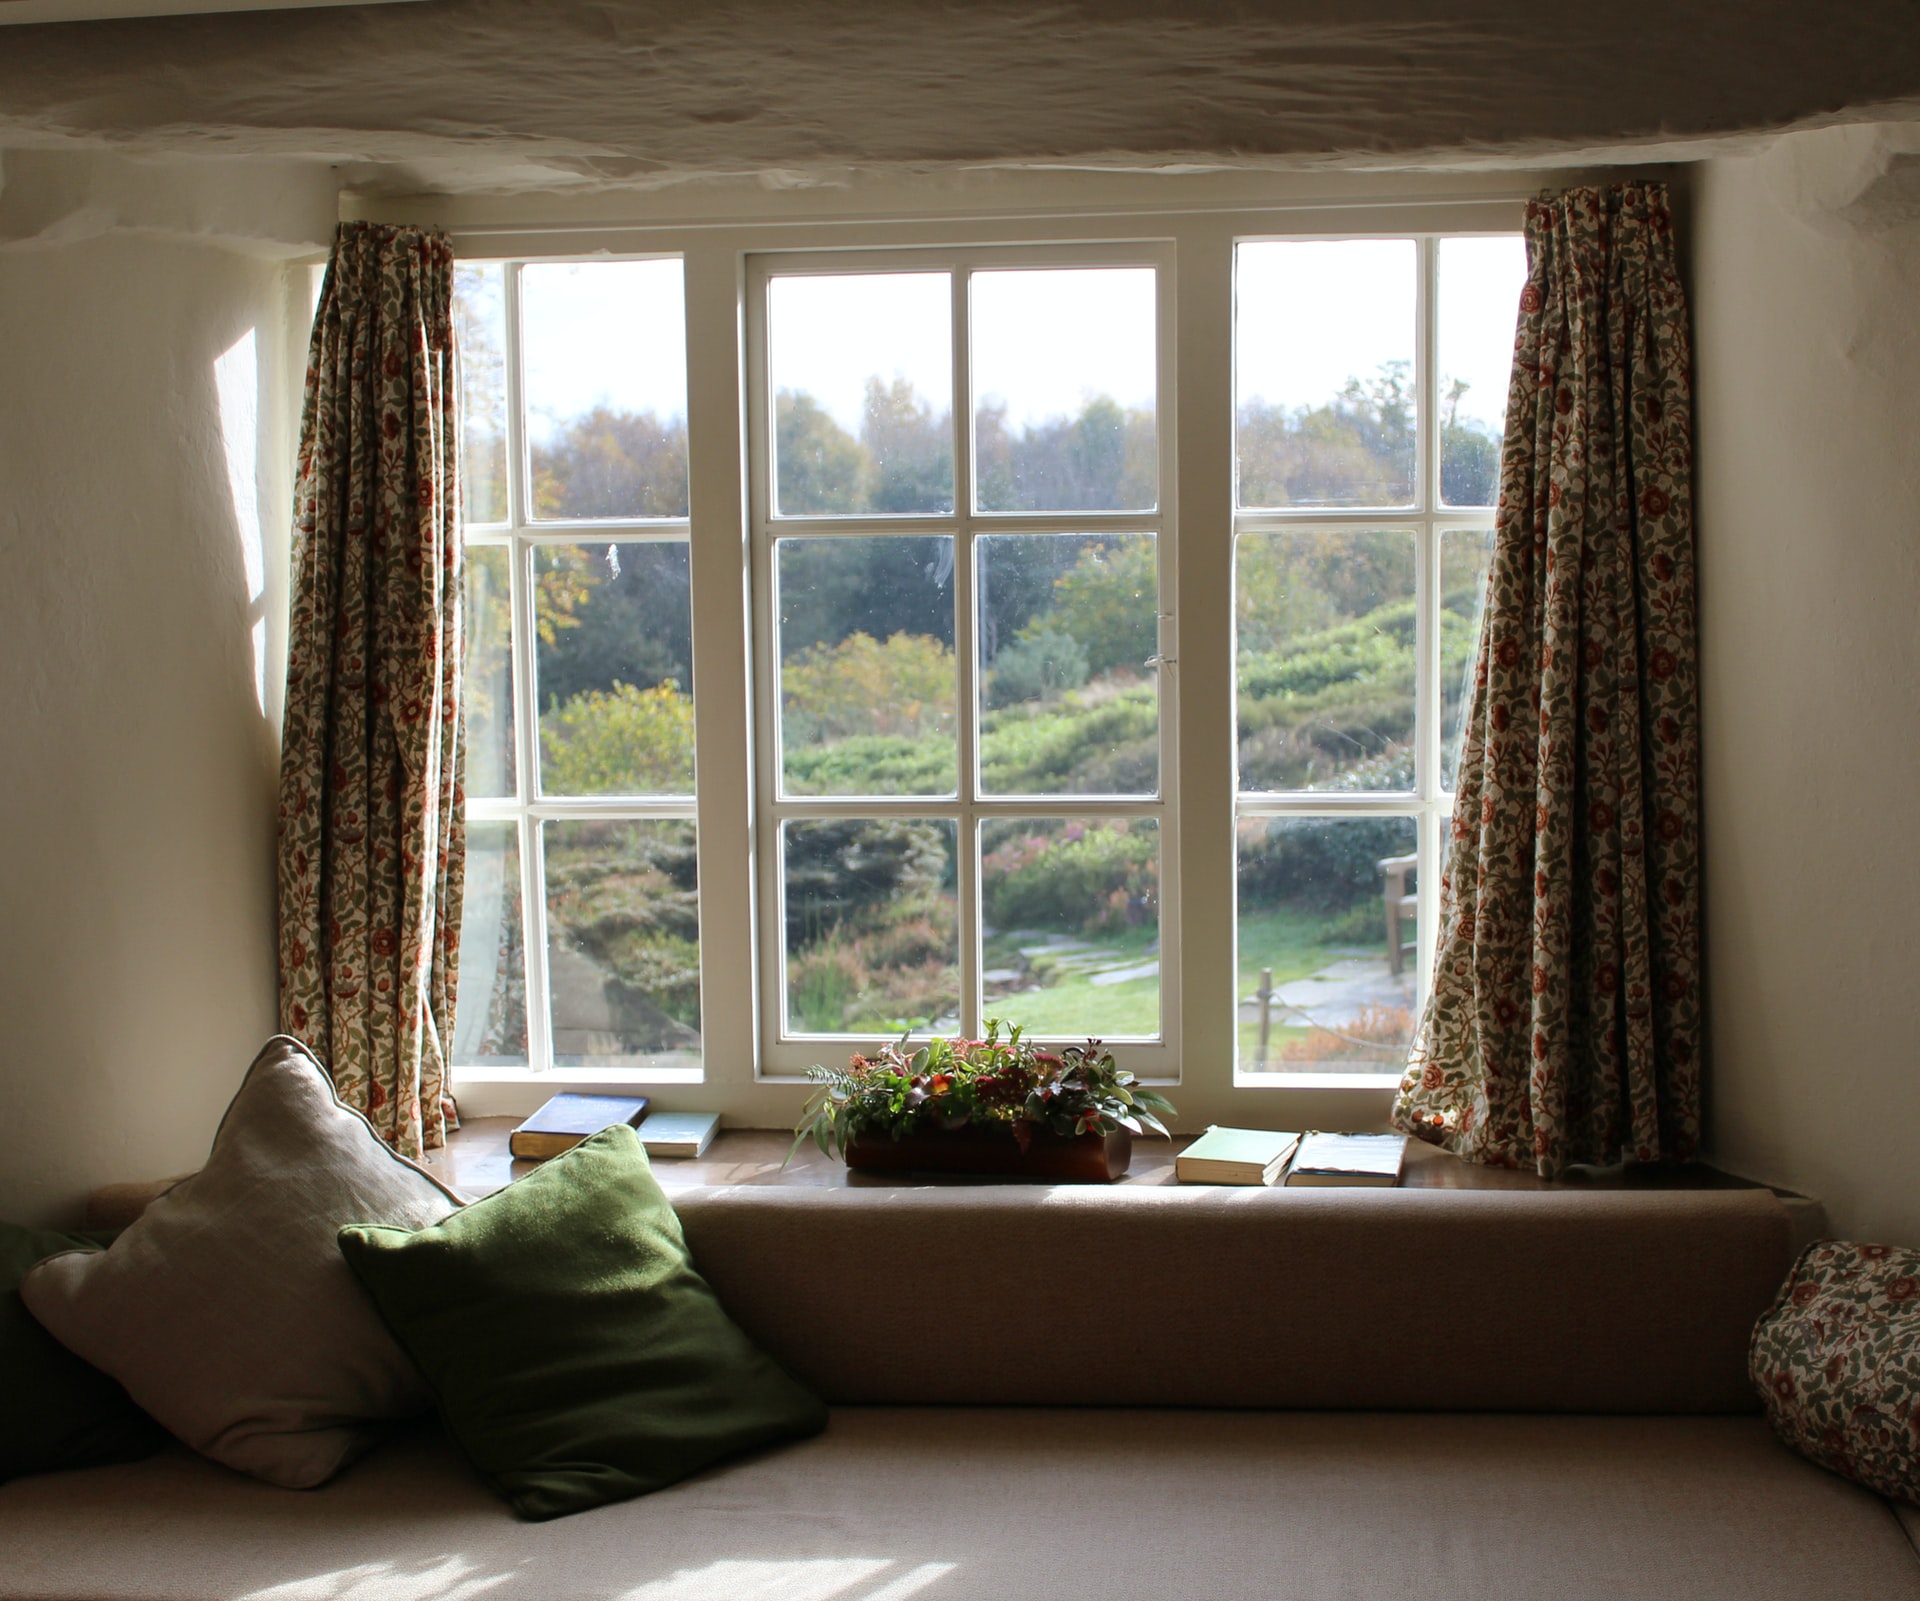 二楼的房间，有一扇旧窗户，可以看到后院。窗户两侧挂着窗帘，窗台上放着一株植物和几本书。